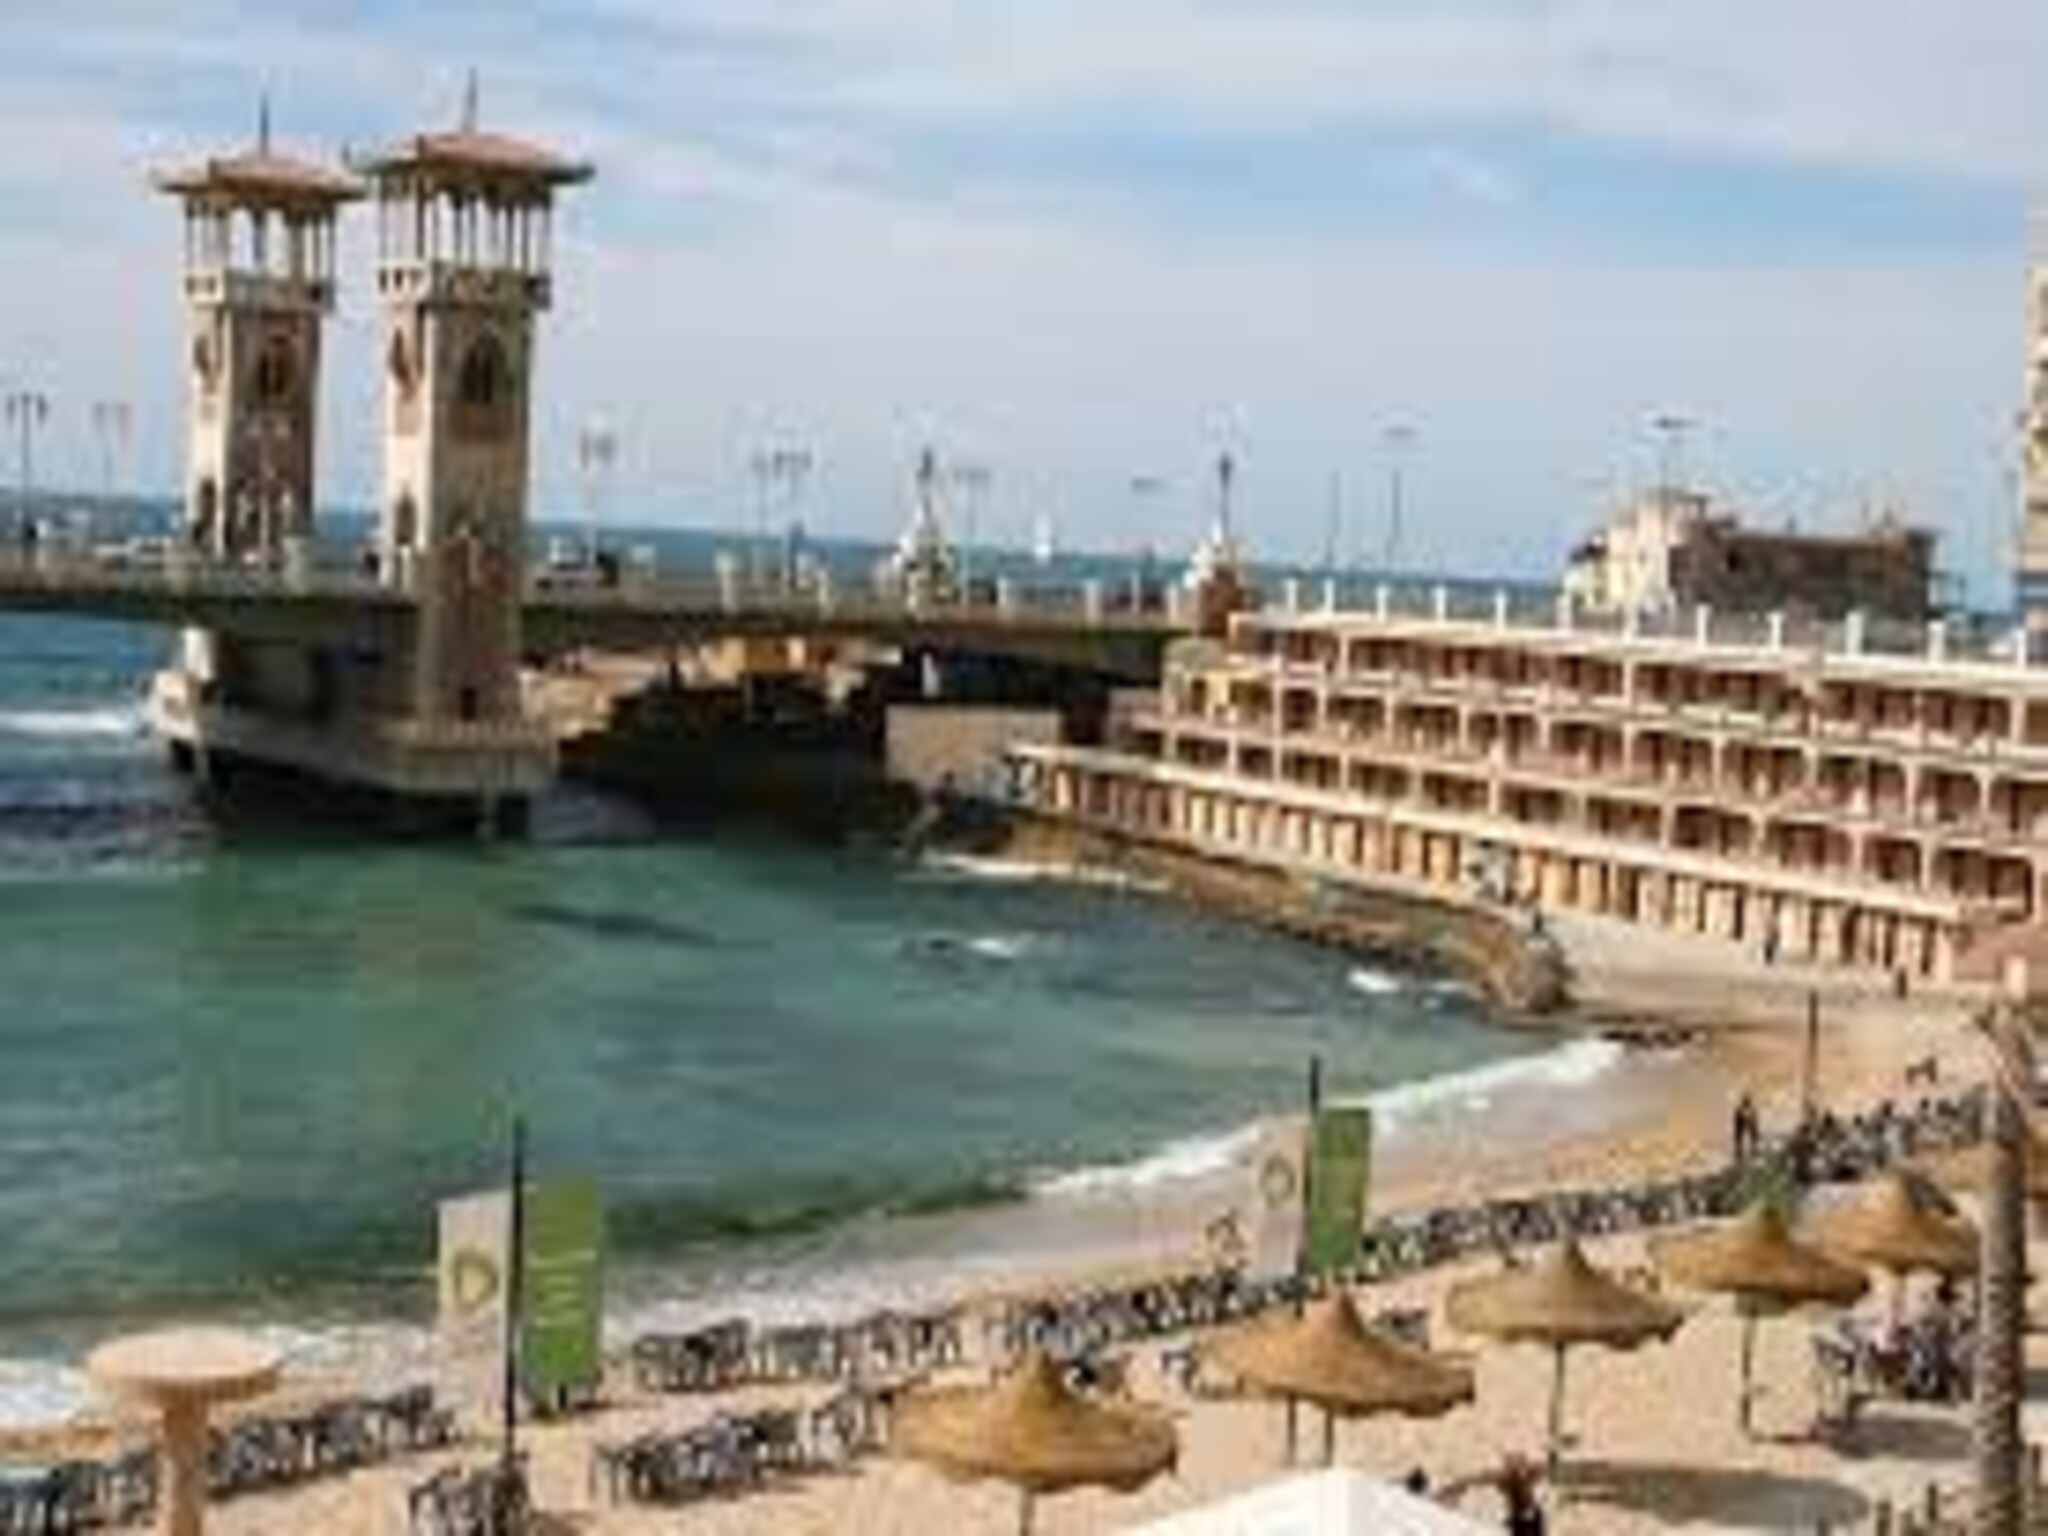 إعادة تفعيل خدمة حجز شواطئ إسكندرية بإستخدام الرقم القومي